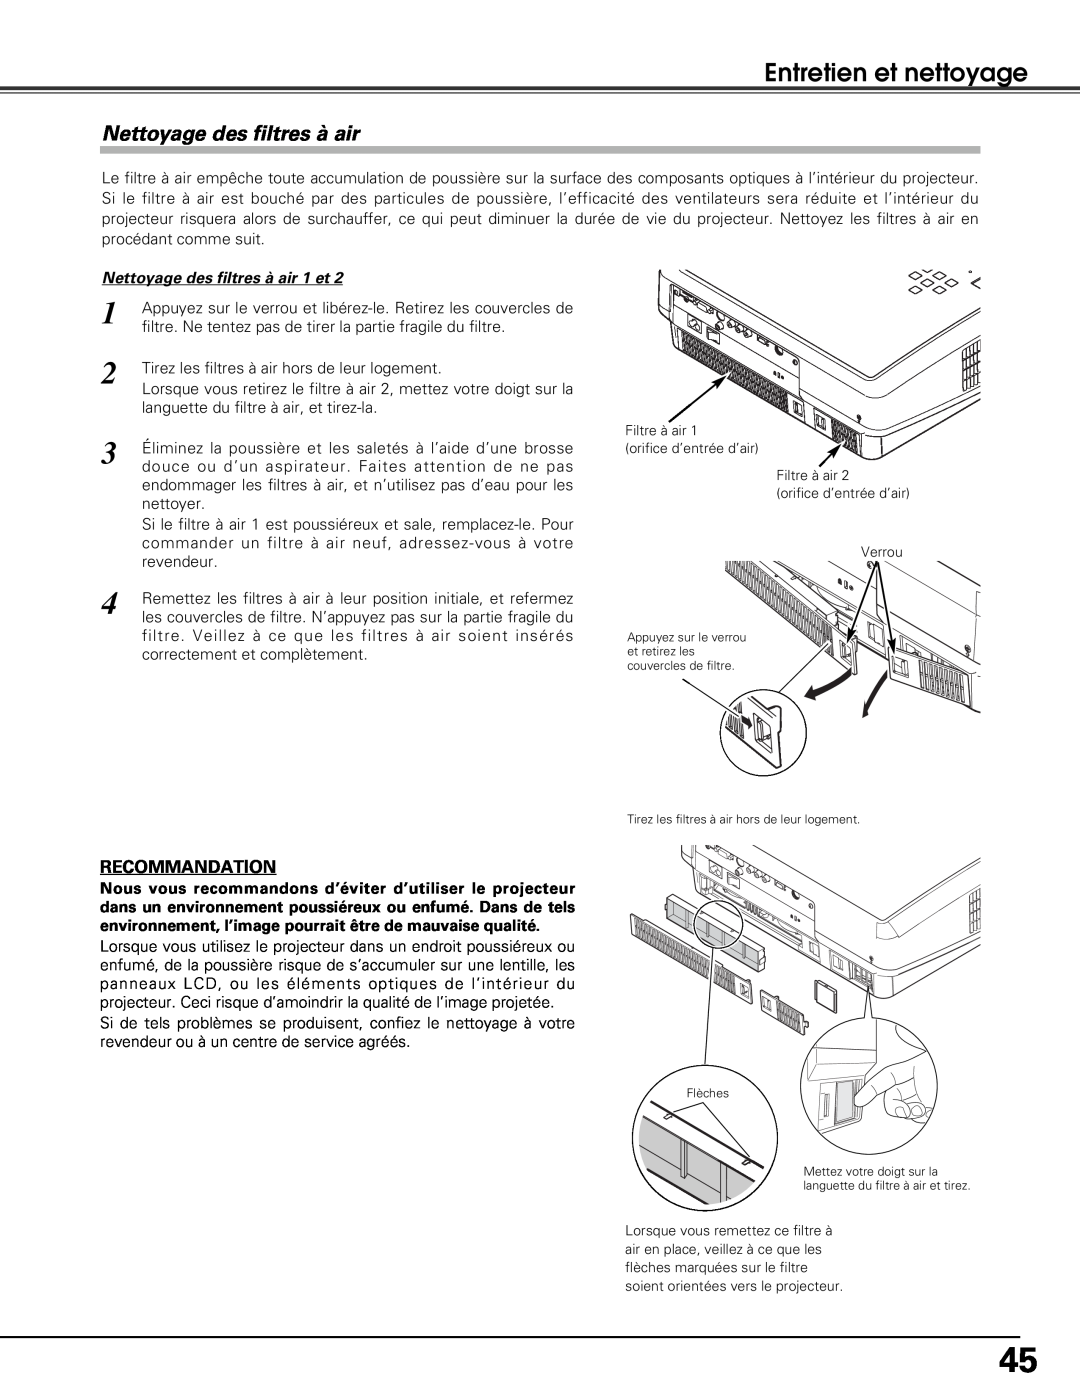 Sanyo PLV-Z5BK manual Nettoyage des filtres à air, Entretien et nettoyage, Recommandation 